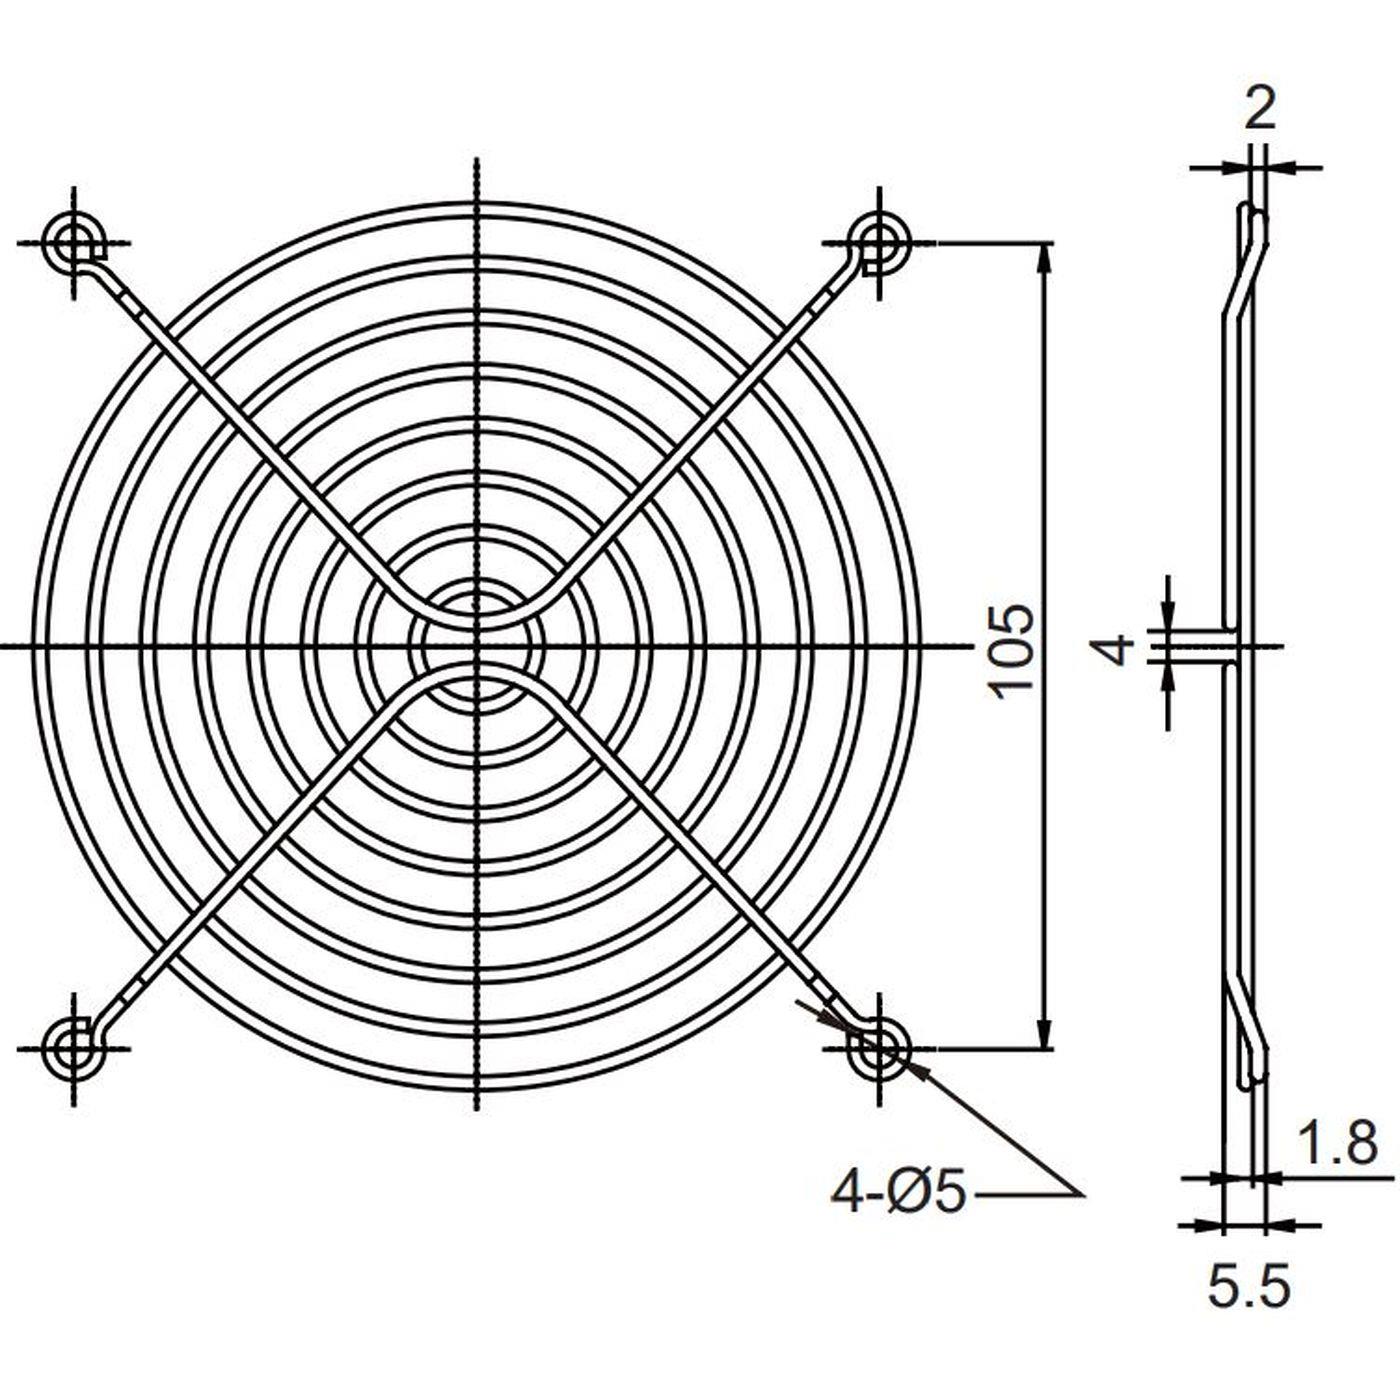 Fan grille 120x120mm for Axial fan 120x120x25mm 120x120x38mm